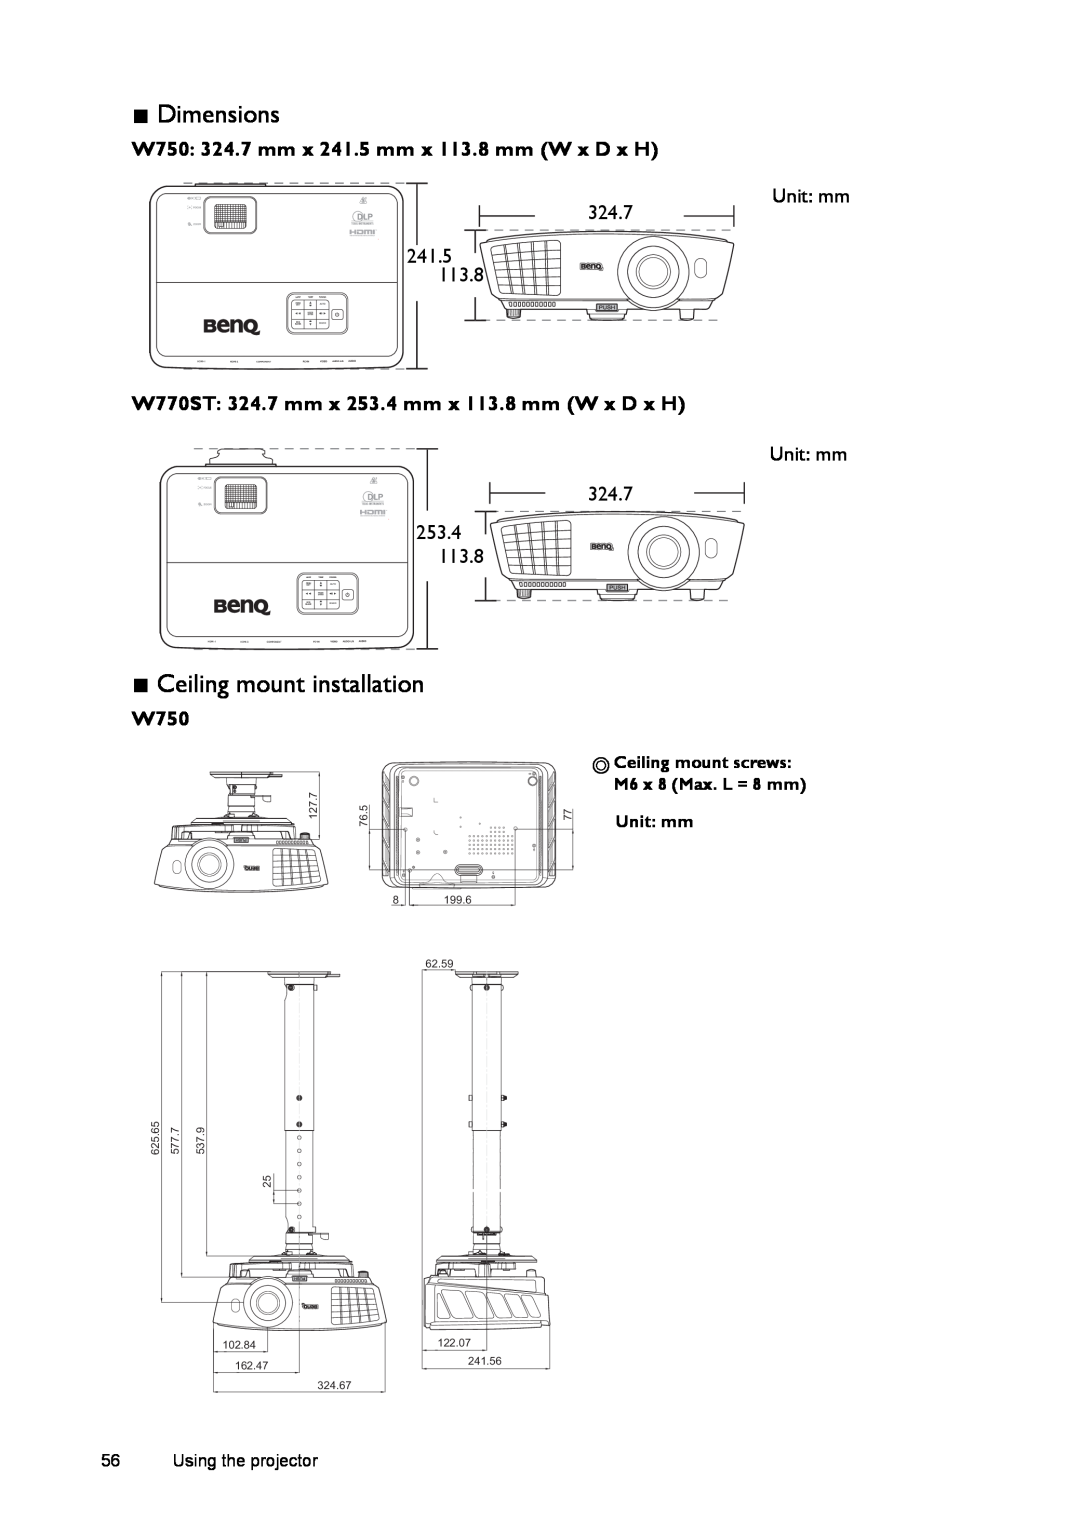 BenQ W770ST Unit mm, Ceiling mount screws M6 x 8 Max. L = 8 mm, 127.7, 76.5, 199.6, 62.59, 625.65, 577.7, 537.9, 162.47 